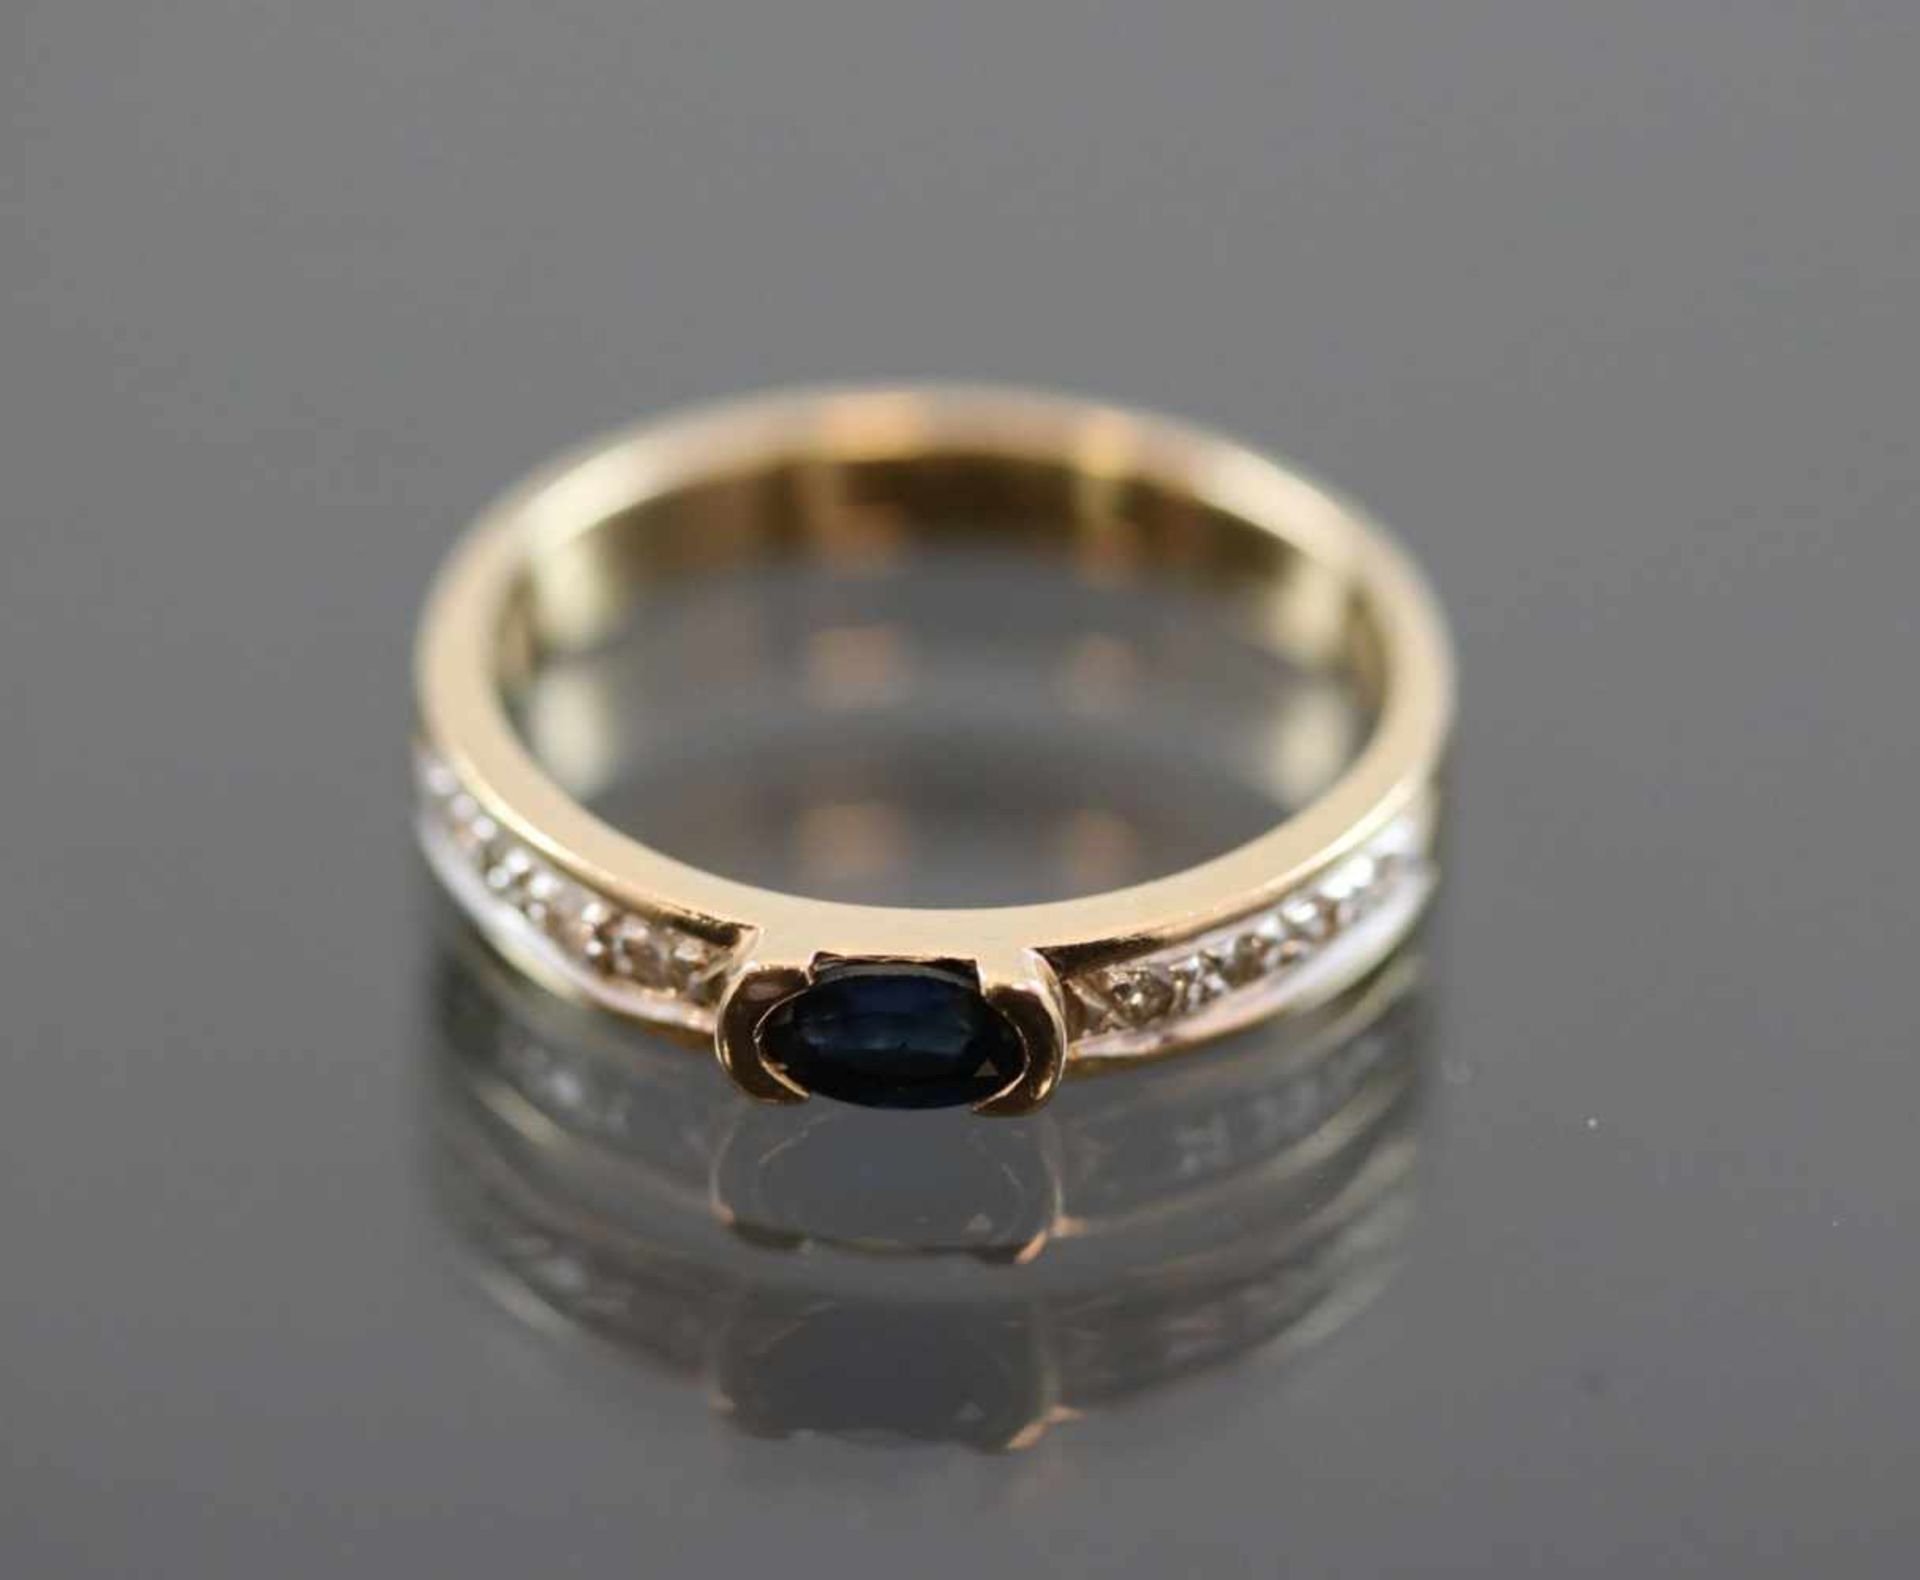 Saphir-Brillant-Ring, 585 Gelbgold2,9 Gramm 8 Brillanten, 0,08 ct., w/si. Ringgröße: